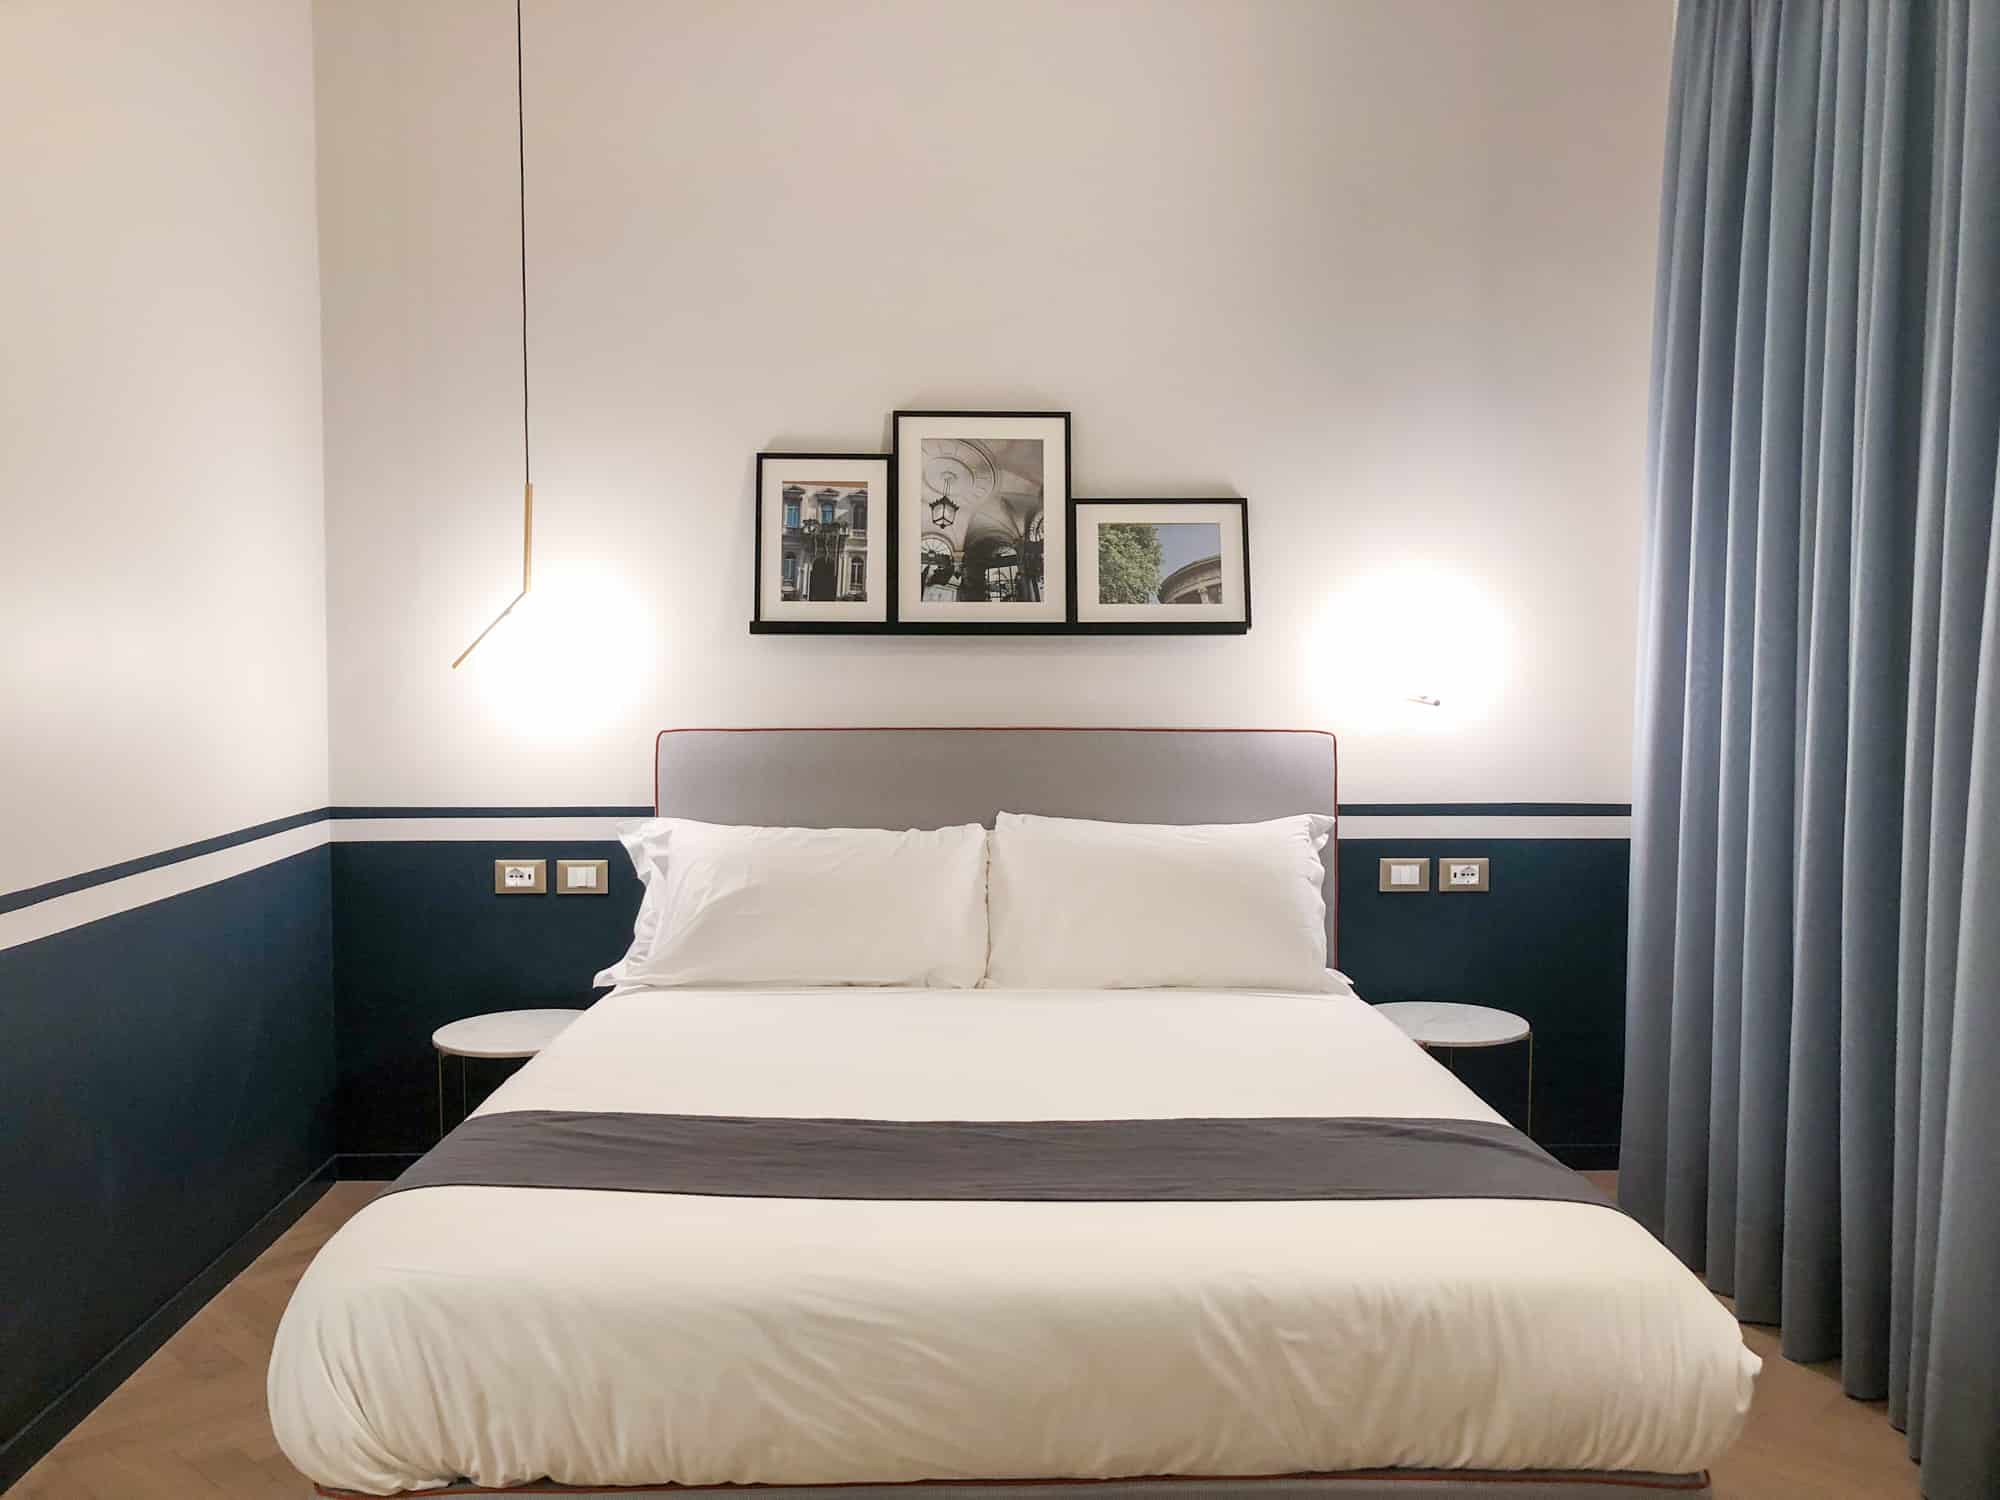 Best travel websites 2021 - bedroom interior